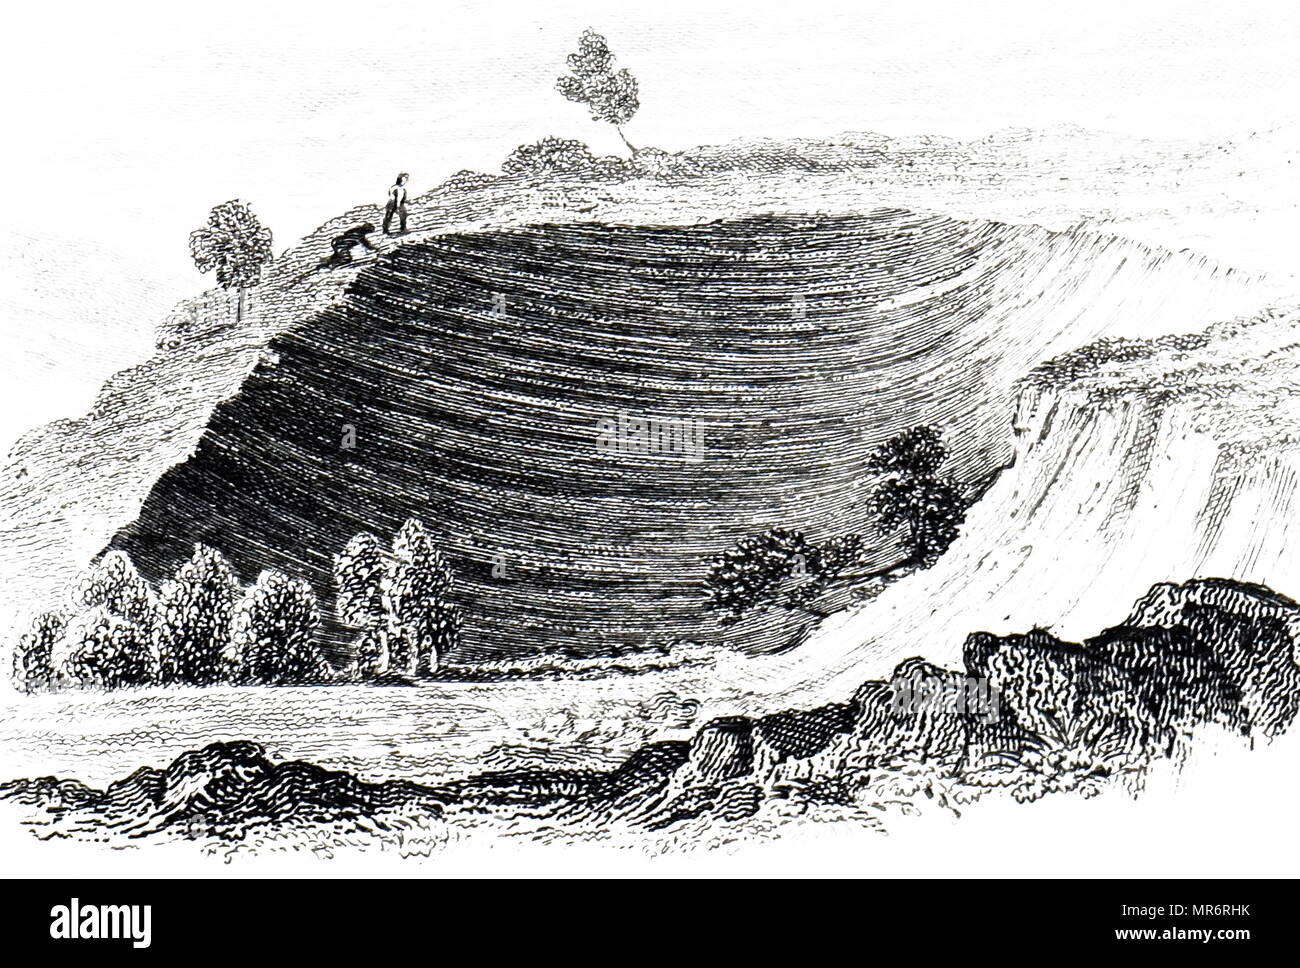 Gravur, ein Abgrund, in der Nähe von Oppido, durch die 1783 Kalabrien Erdbeben verursacht. Die Erdbeben waren eine Folge von fünf starken Erdbeben, das die Region Kalabrien im Süden Italiens schlagen, von denen die ersten zwei bedeutende Tsunamis produziert. Vom 19. Jahrhundert Stockfoto